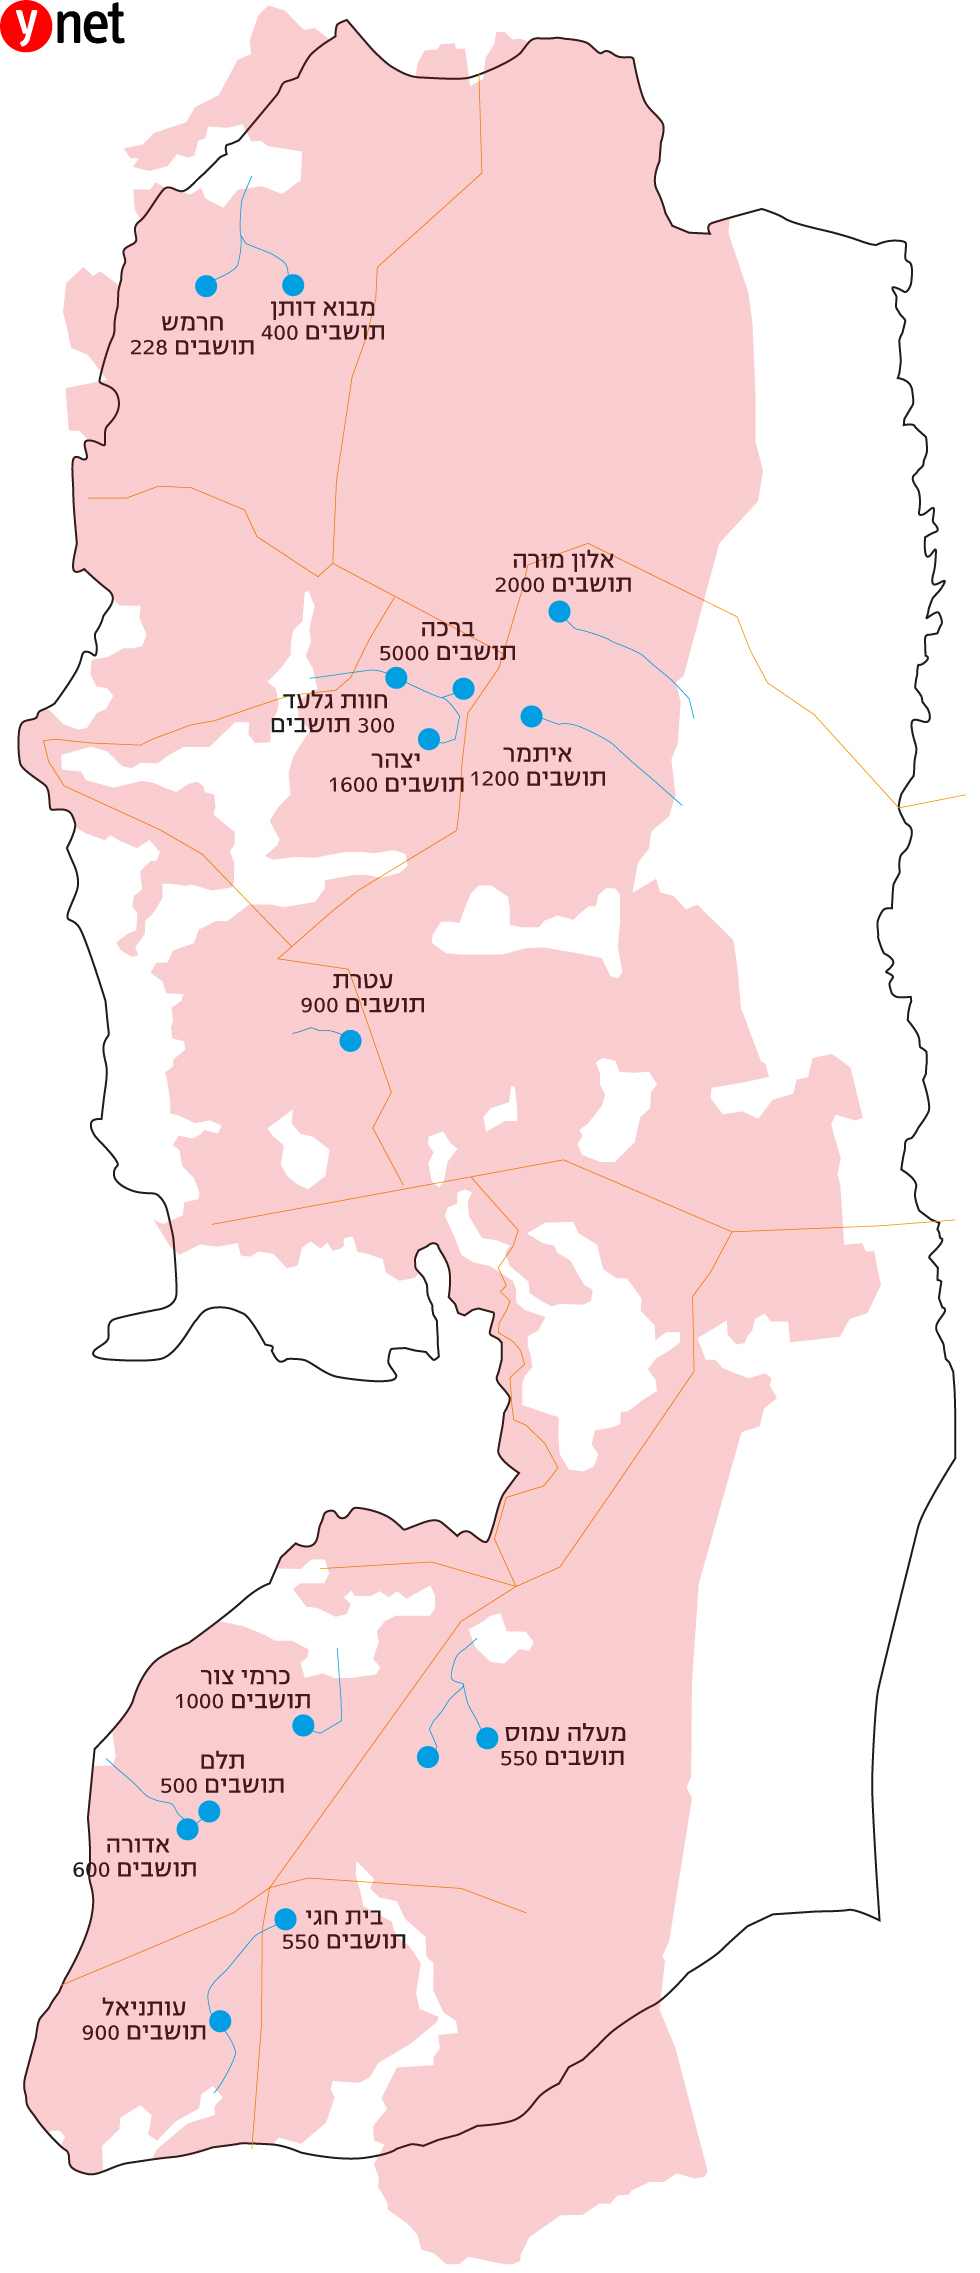 המפה המסמנת את המובלעות והשטחים הפלסטינים ()